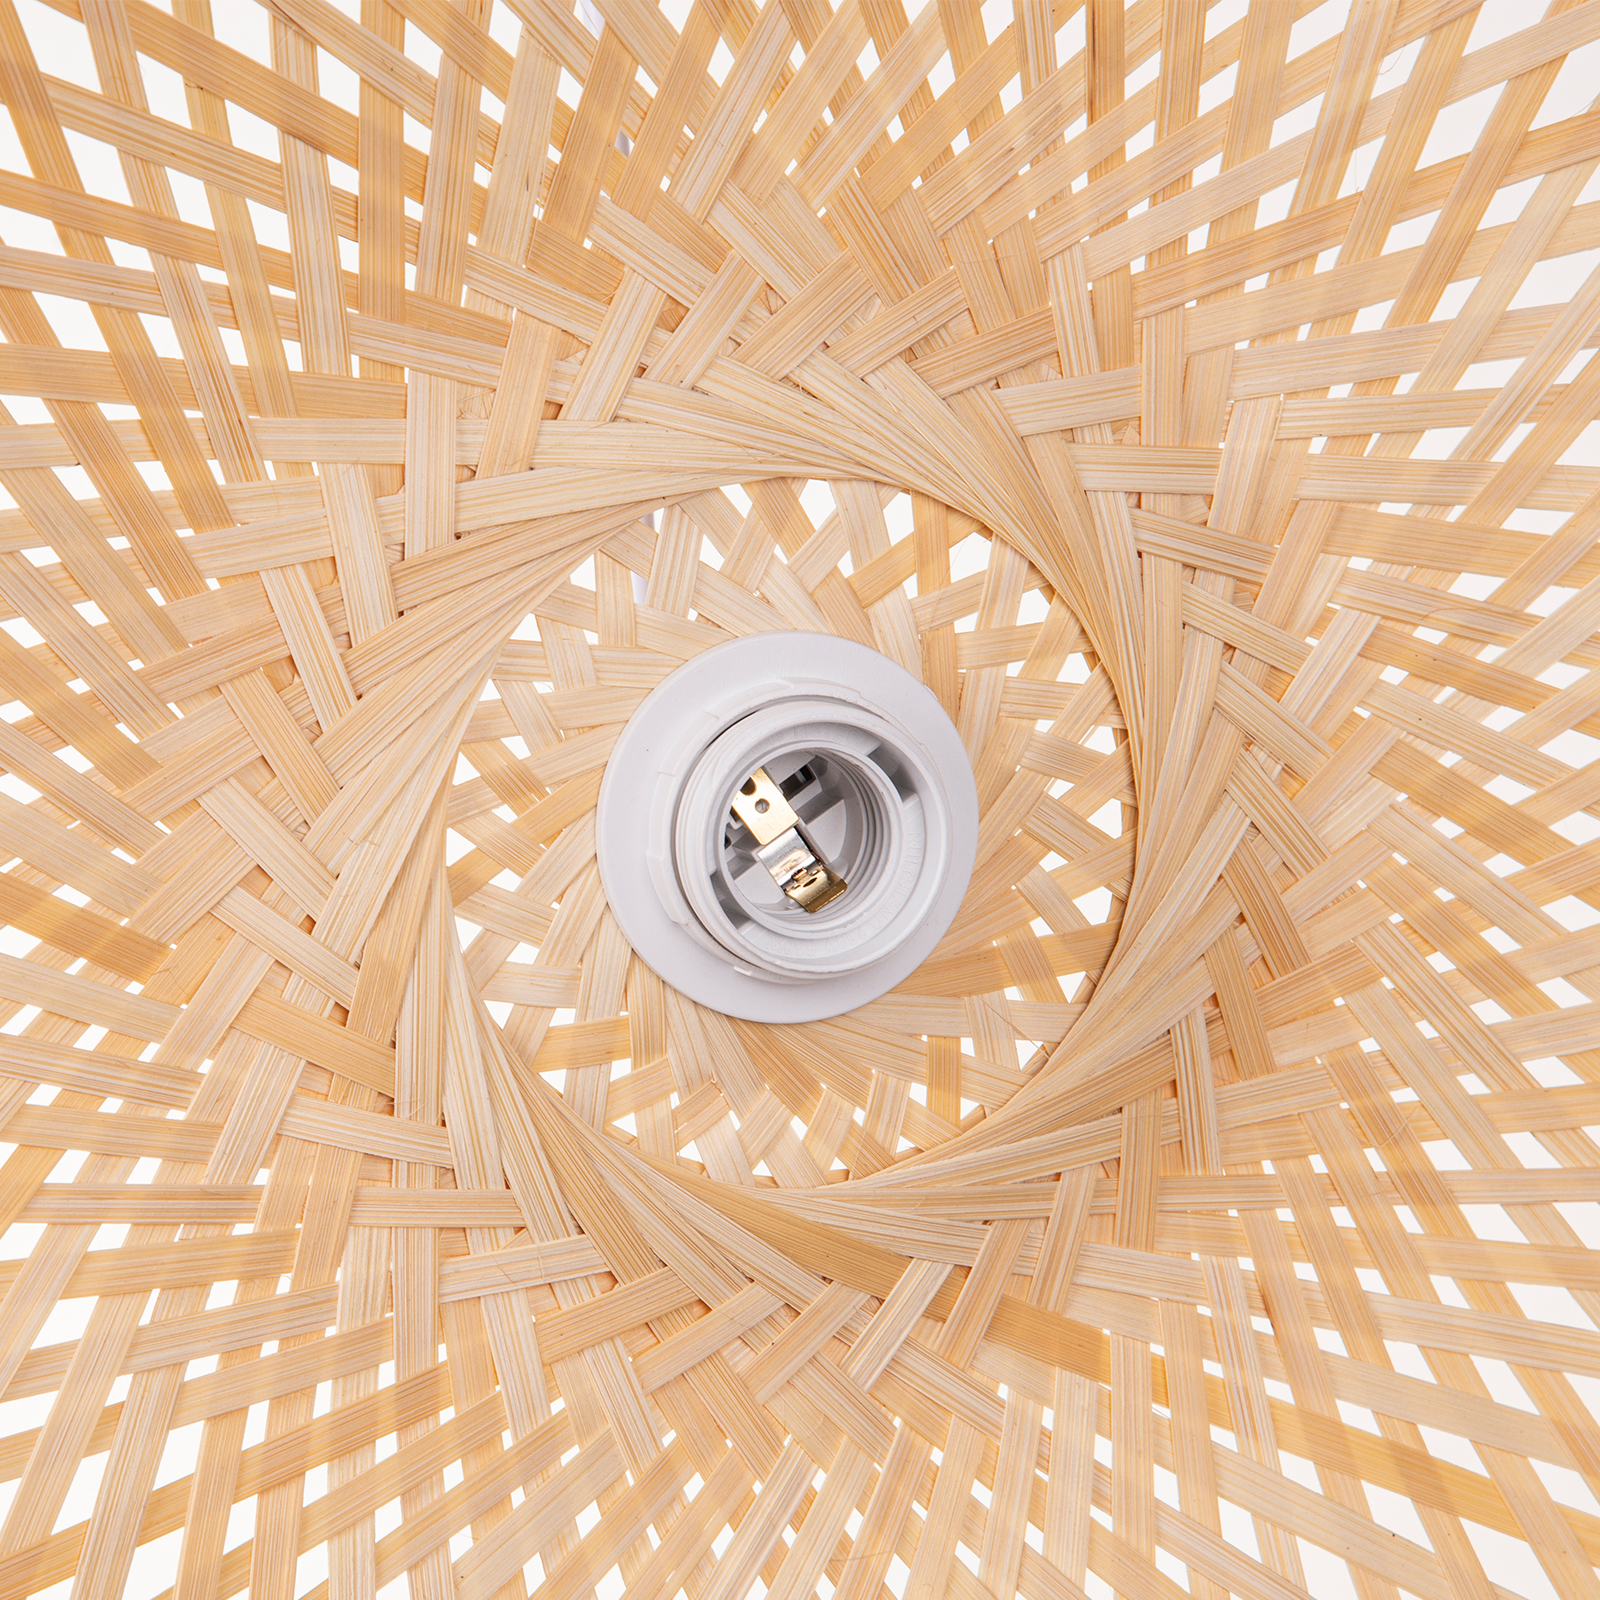 Irregular Bamboo Pendant Light For Bedroom